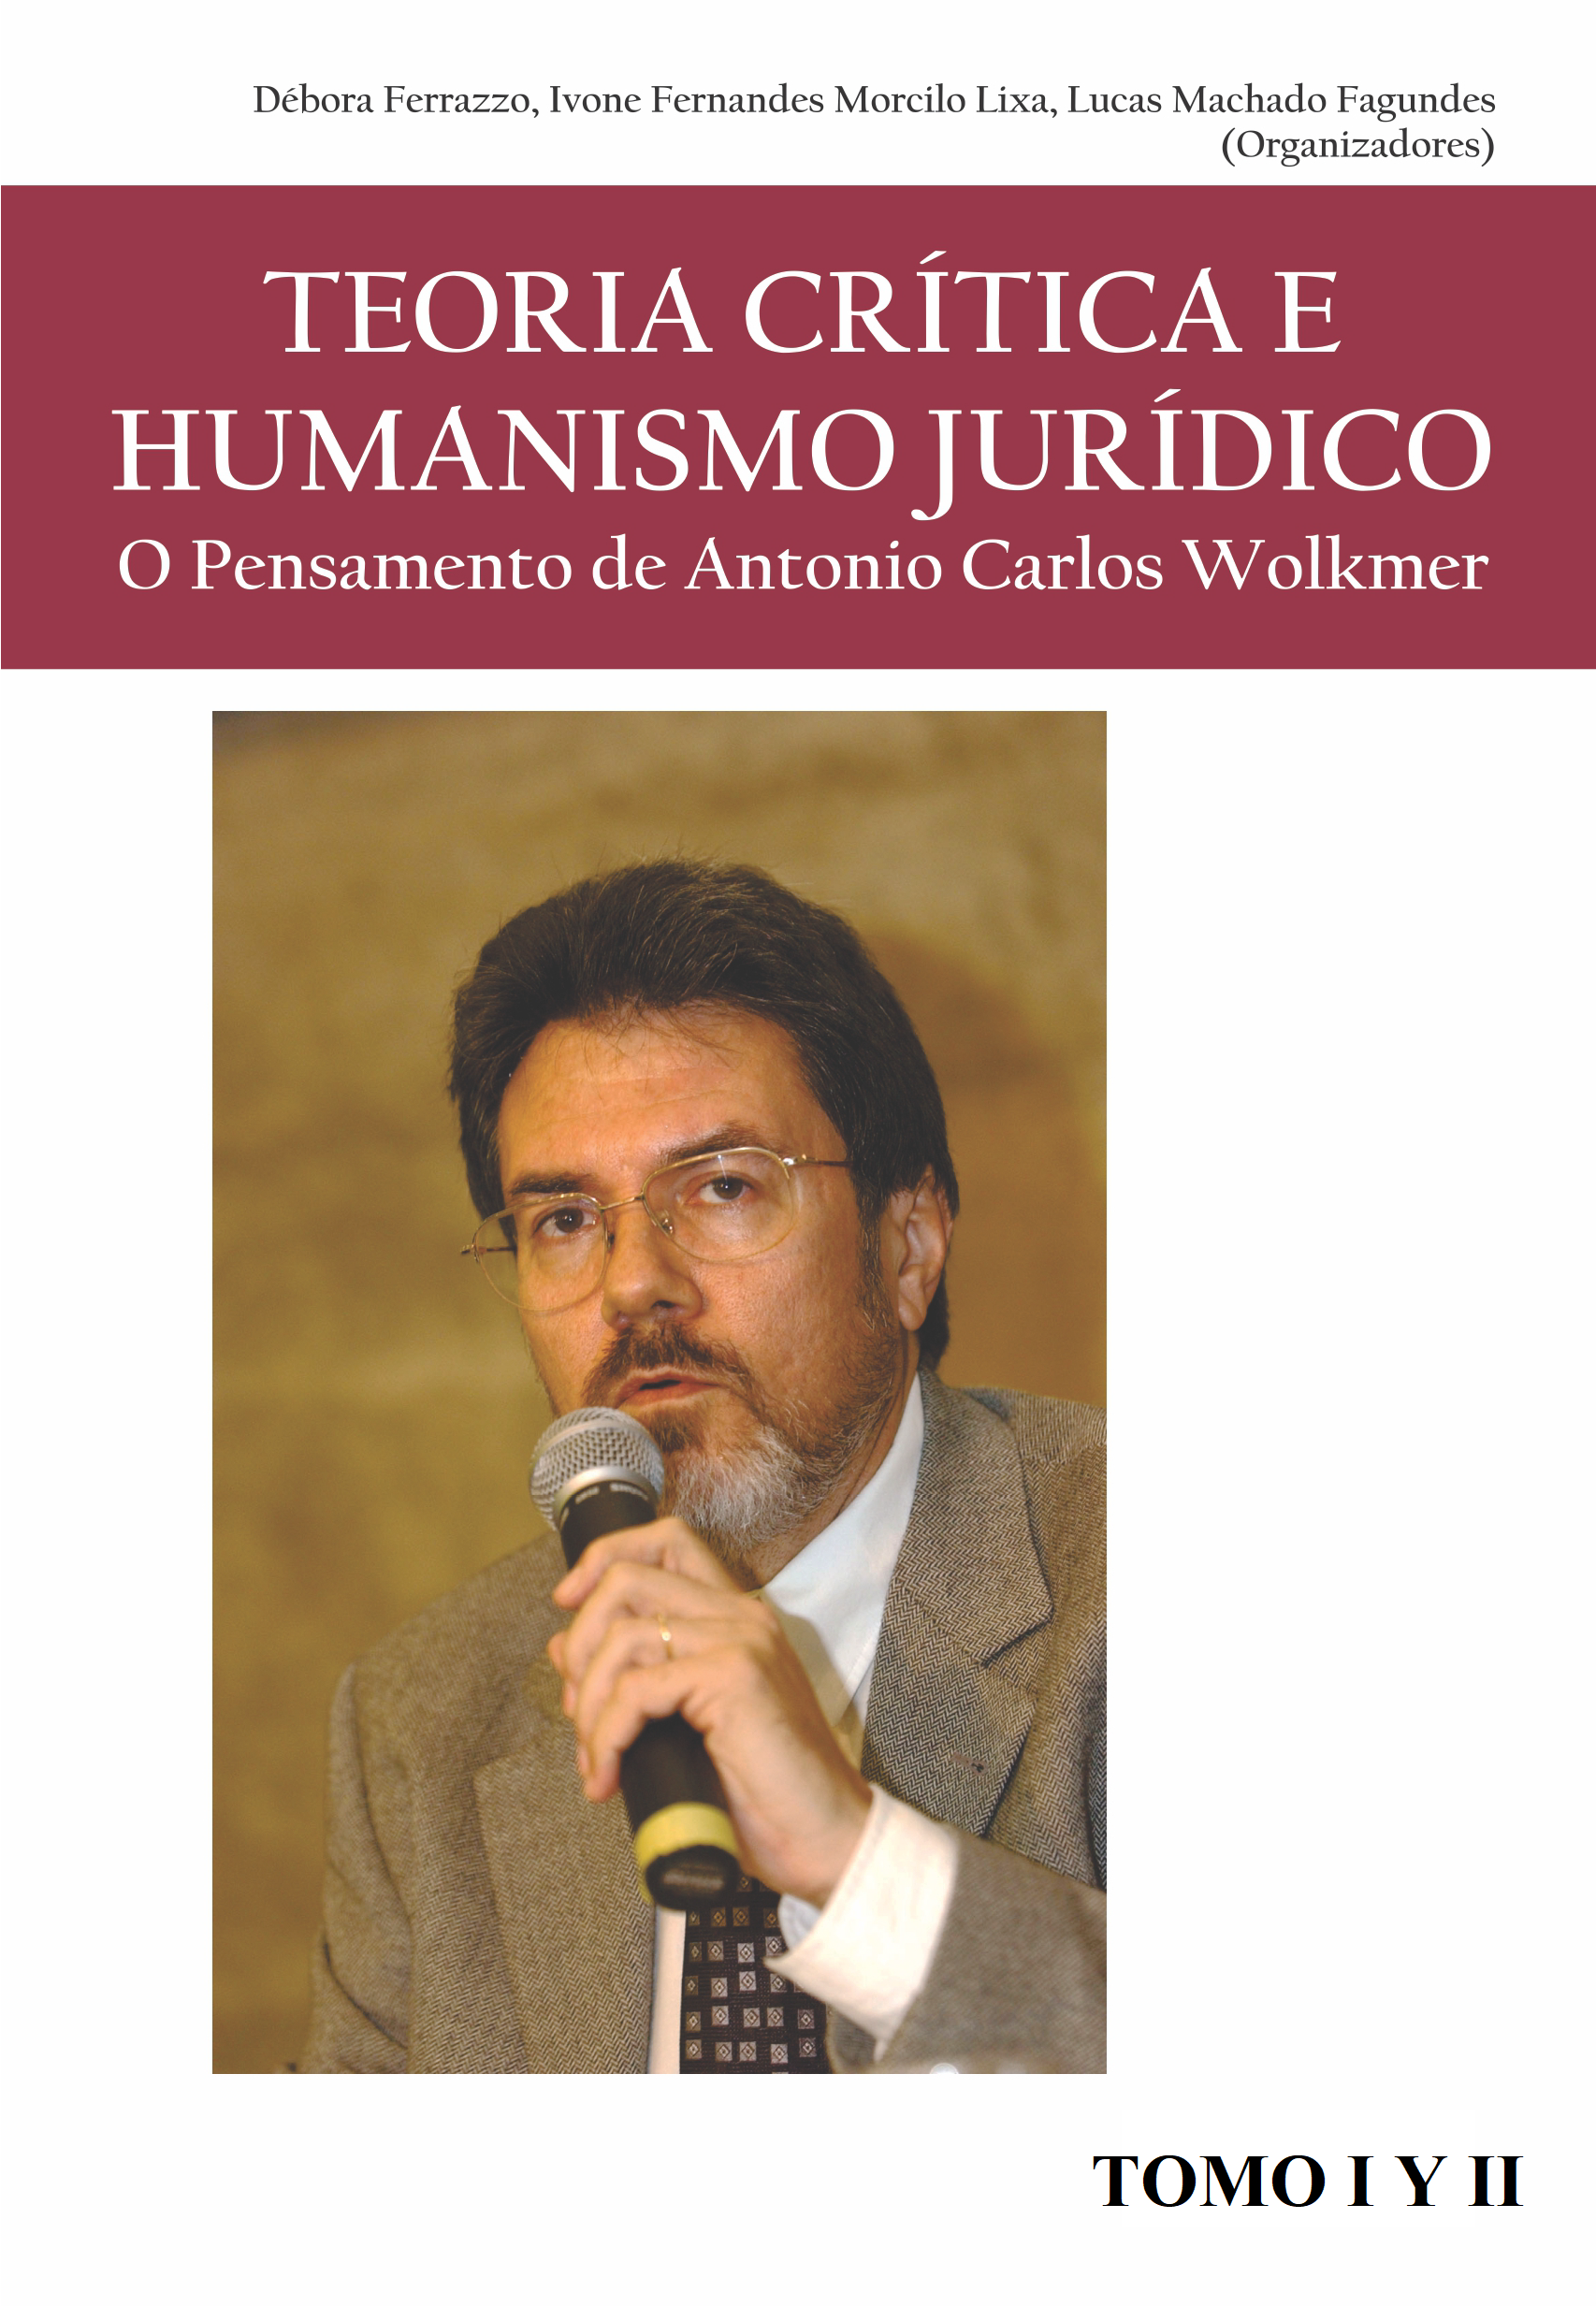 Imagen de portada del libro Teoria crítica e humanismo jurídico. O pensamento de Antonio Carlos Wolkmer